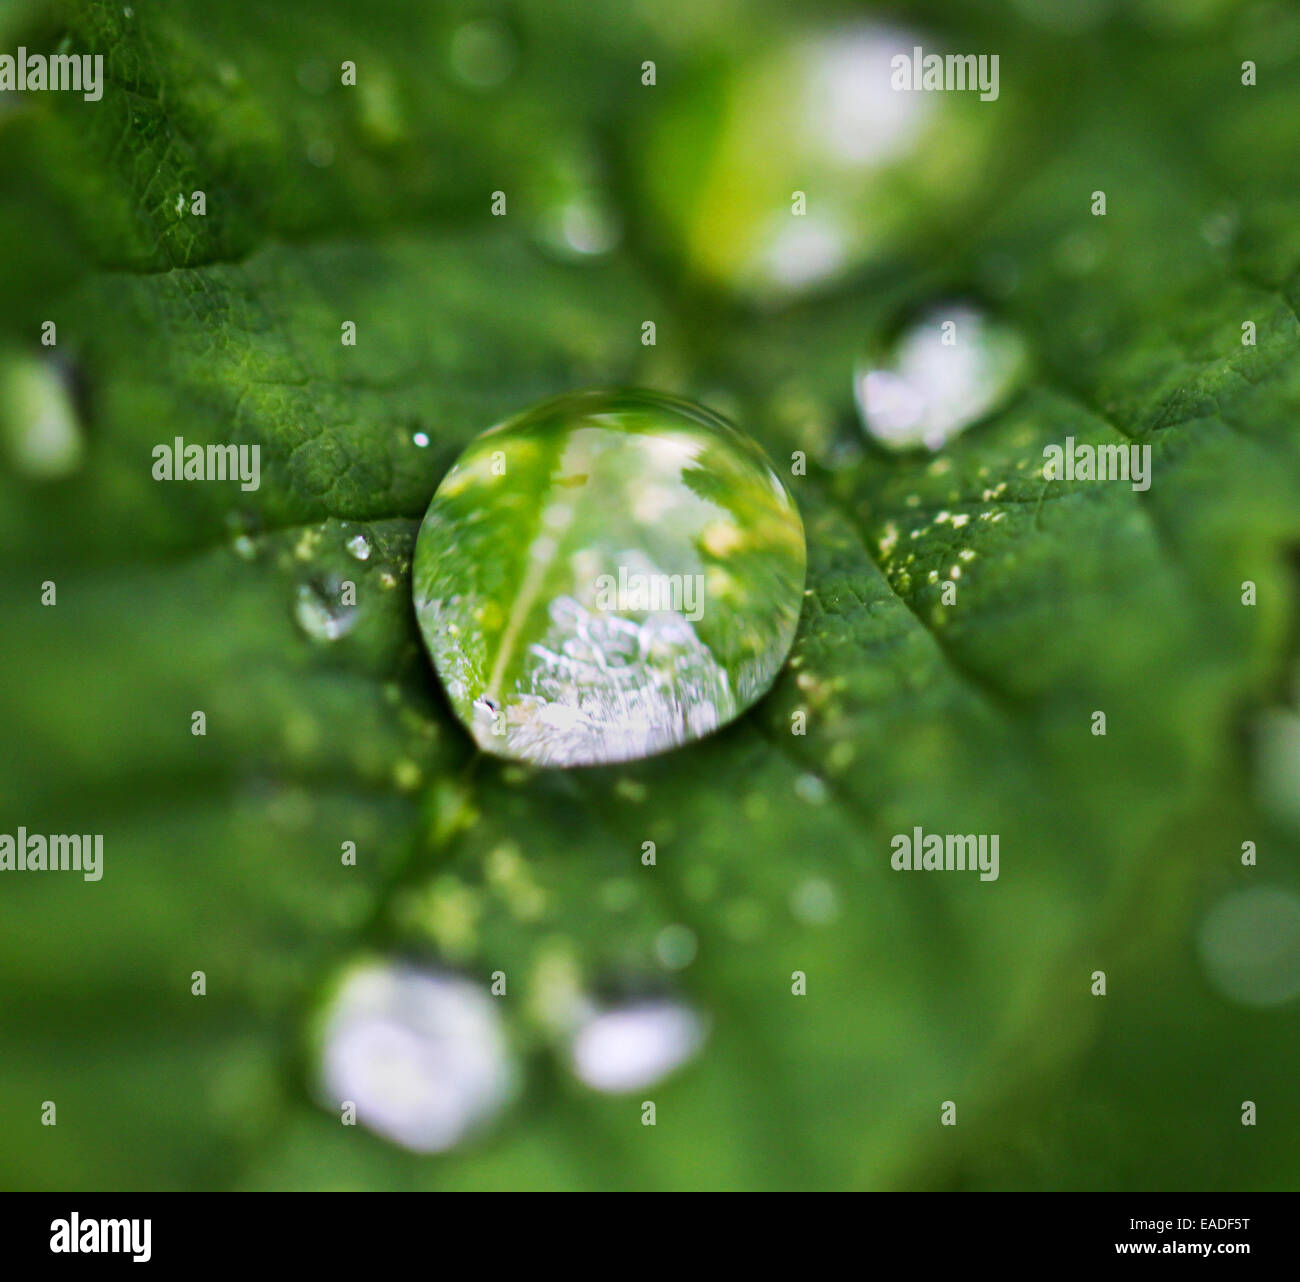 Goccia di acqua fotografato close-up su una foglia verde Foto Stock